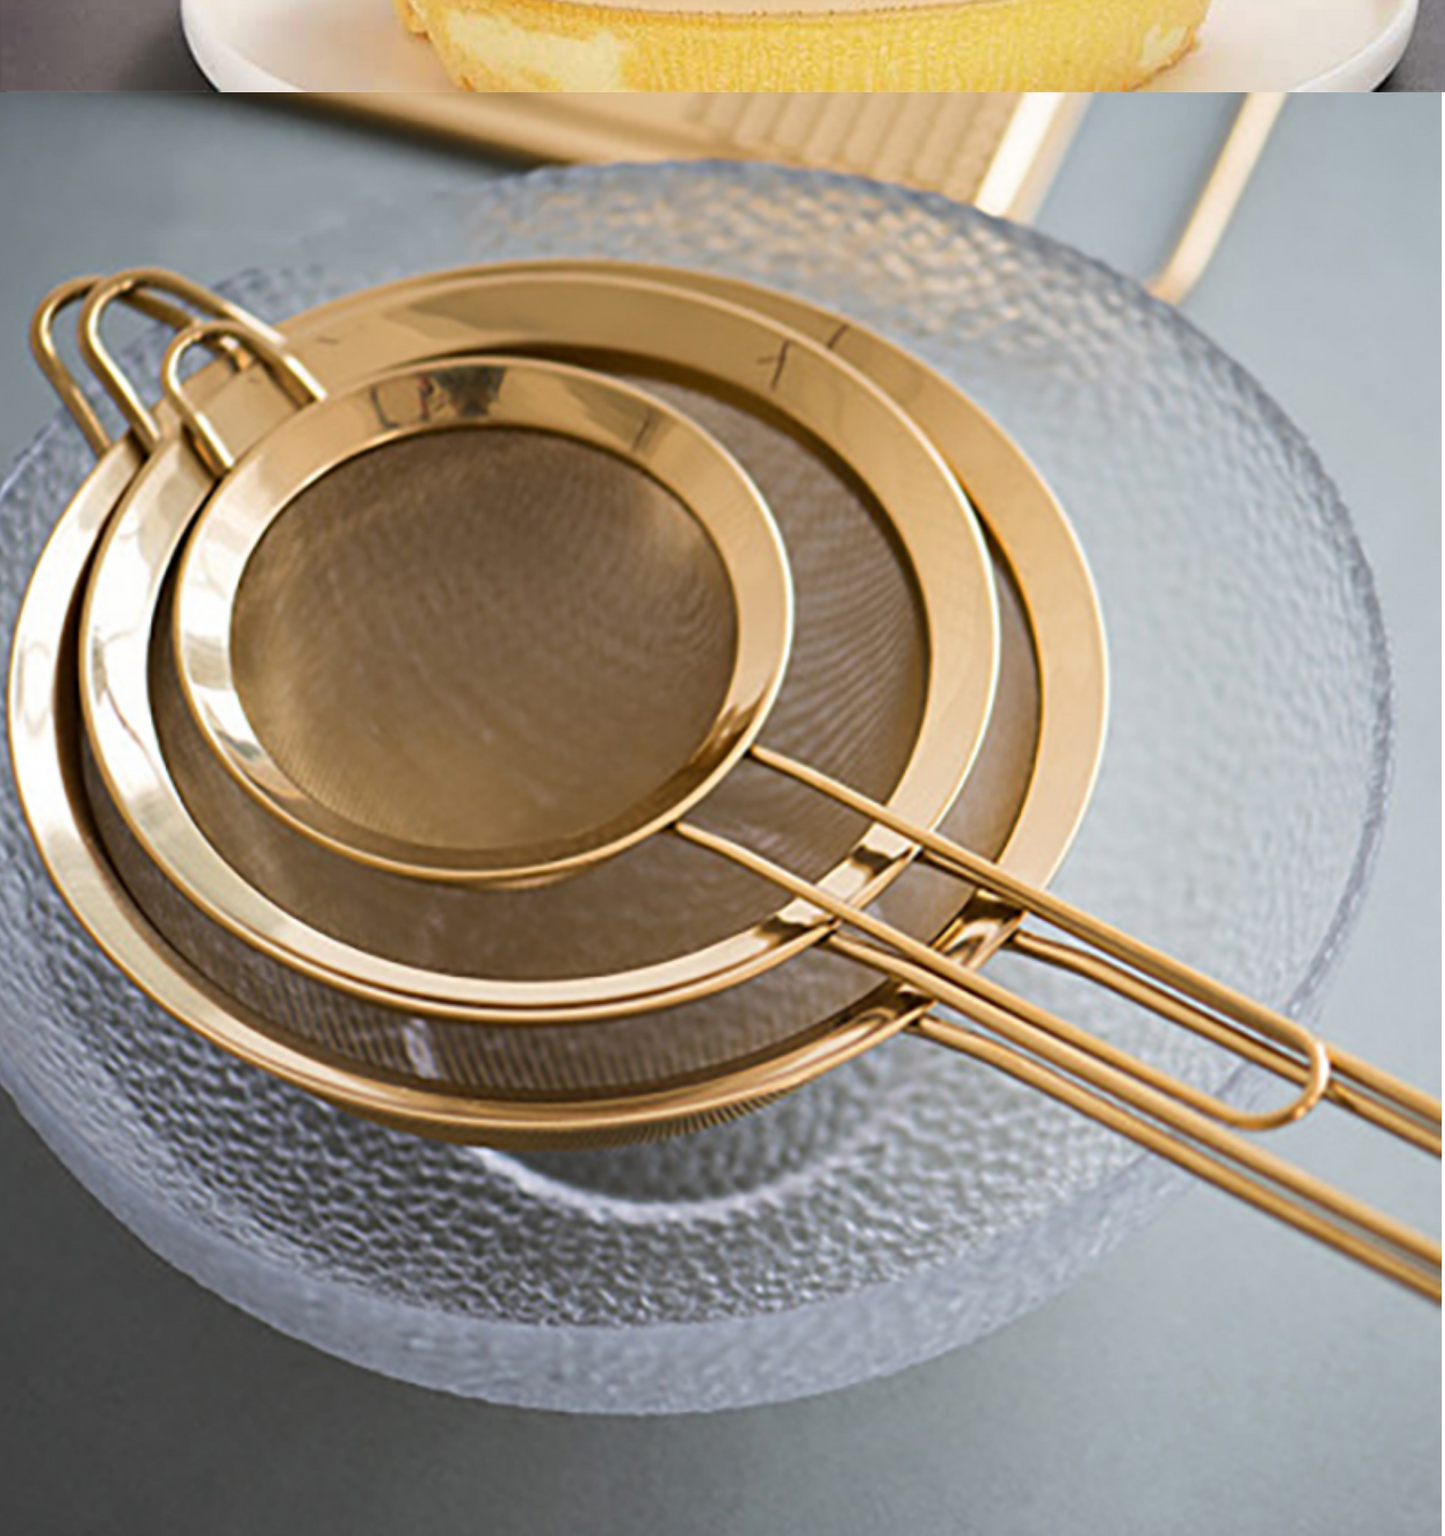 Luxury Gold Sieve - 3 Dimensioni - Oro o Oro Rosa